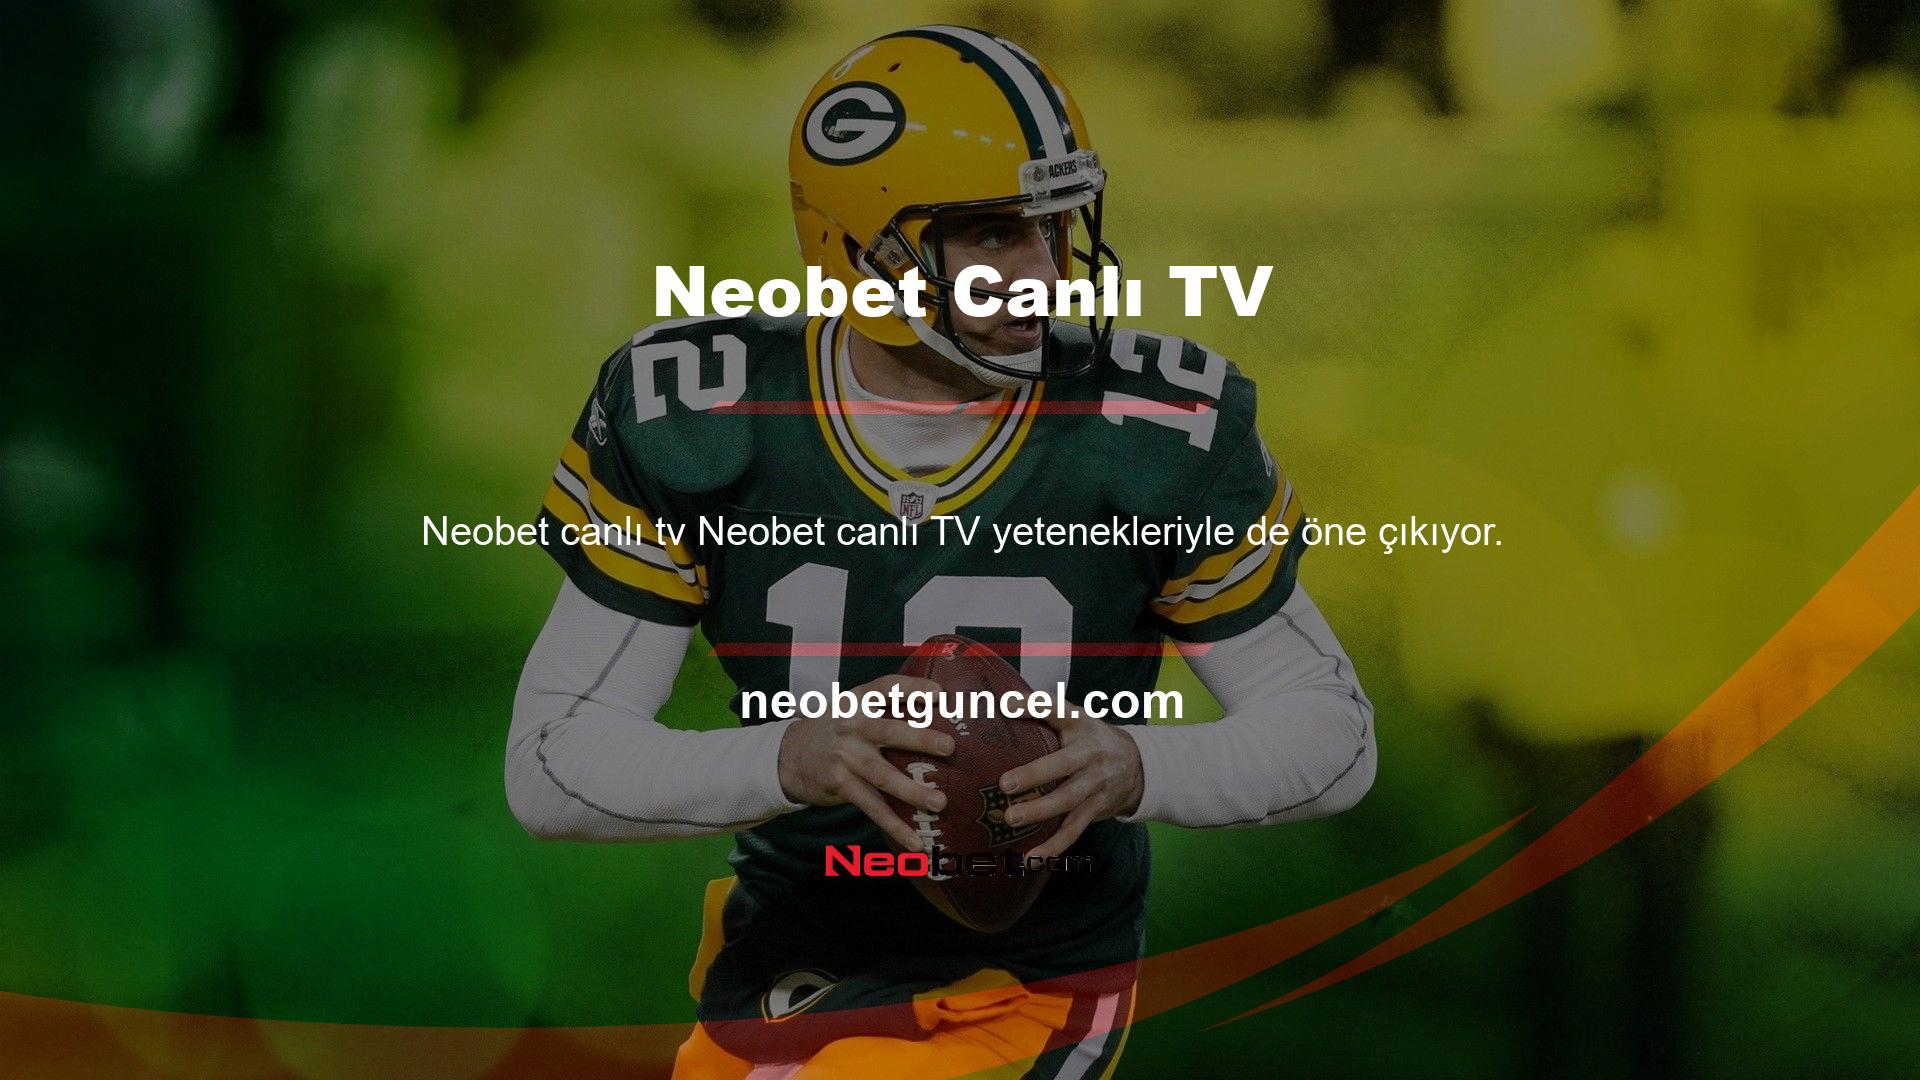 İlk kez duyanlar için Neobet Live TV'nin ne olduğunu kısaca anlatayım